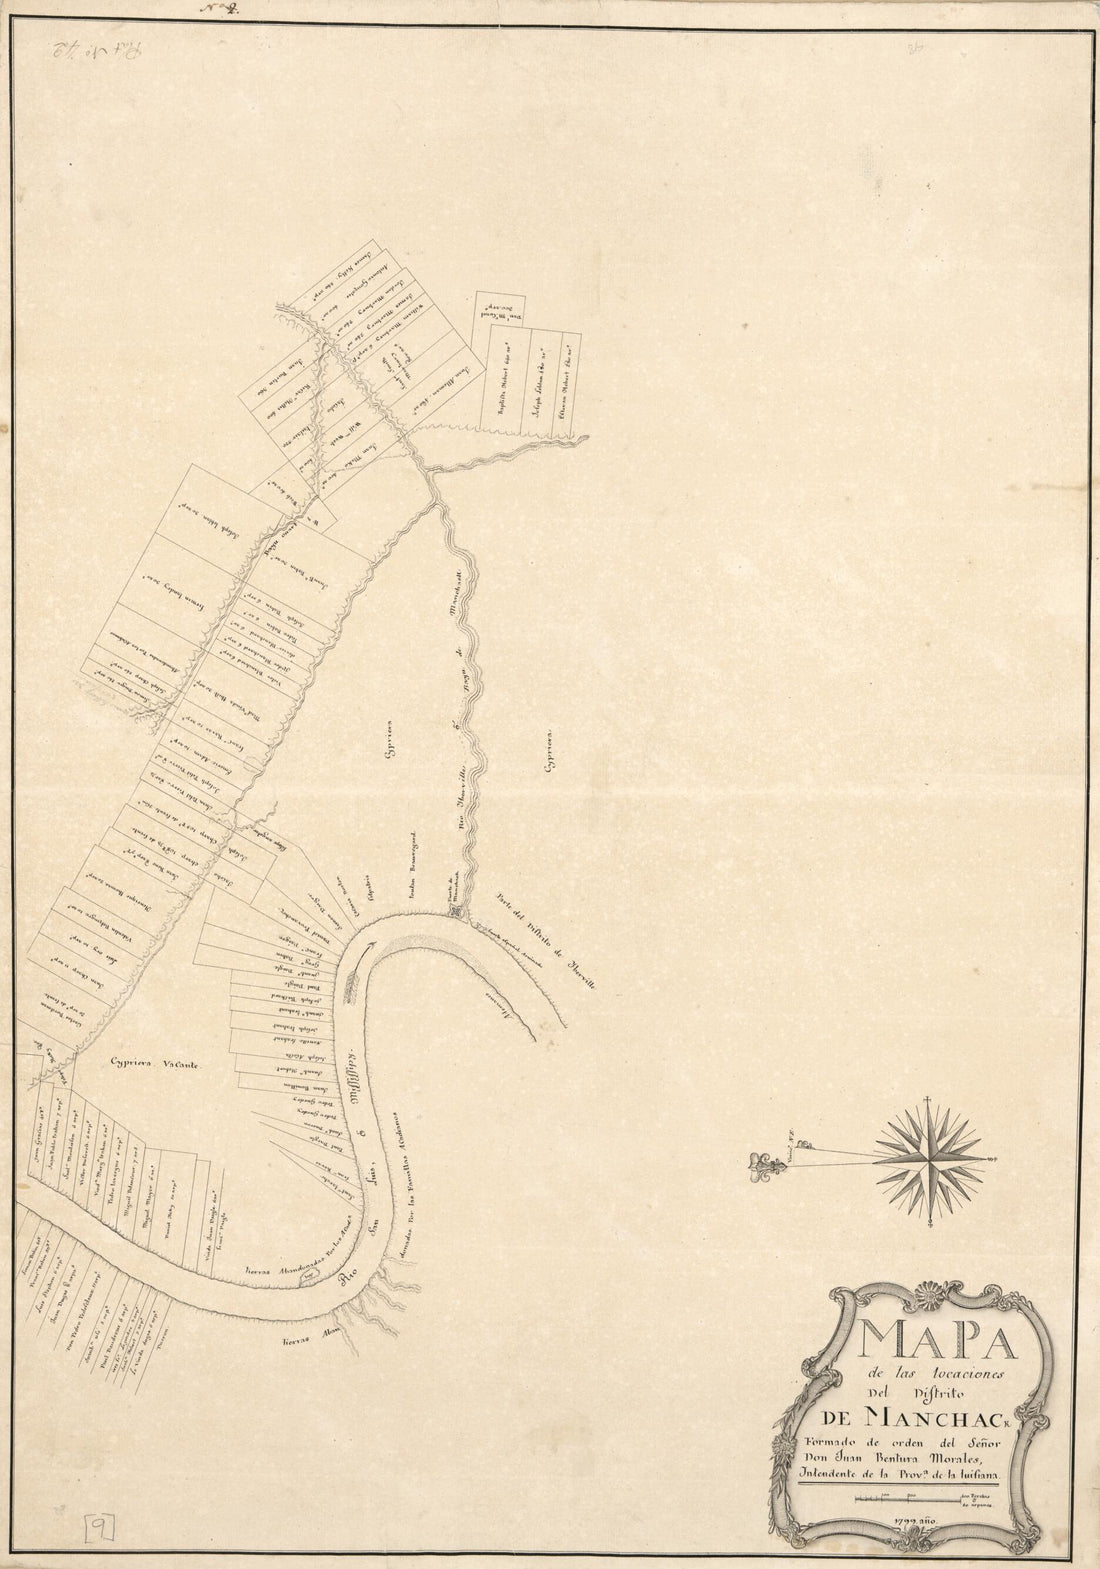 This old map of Mapa De Las Locaciones Del Distrito De Manchack from 1799 was created by Vicente Sebastián Pintado in 1799